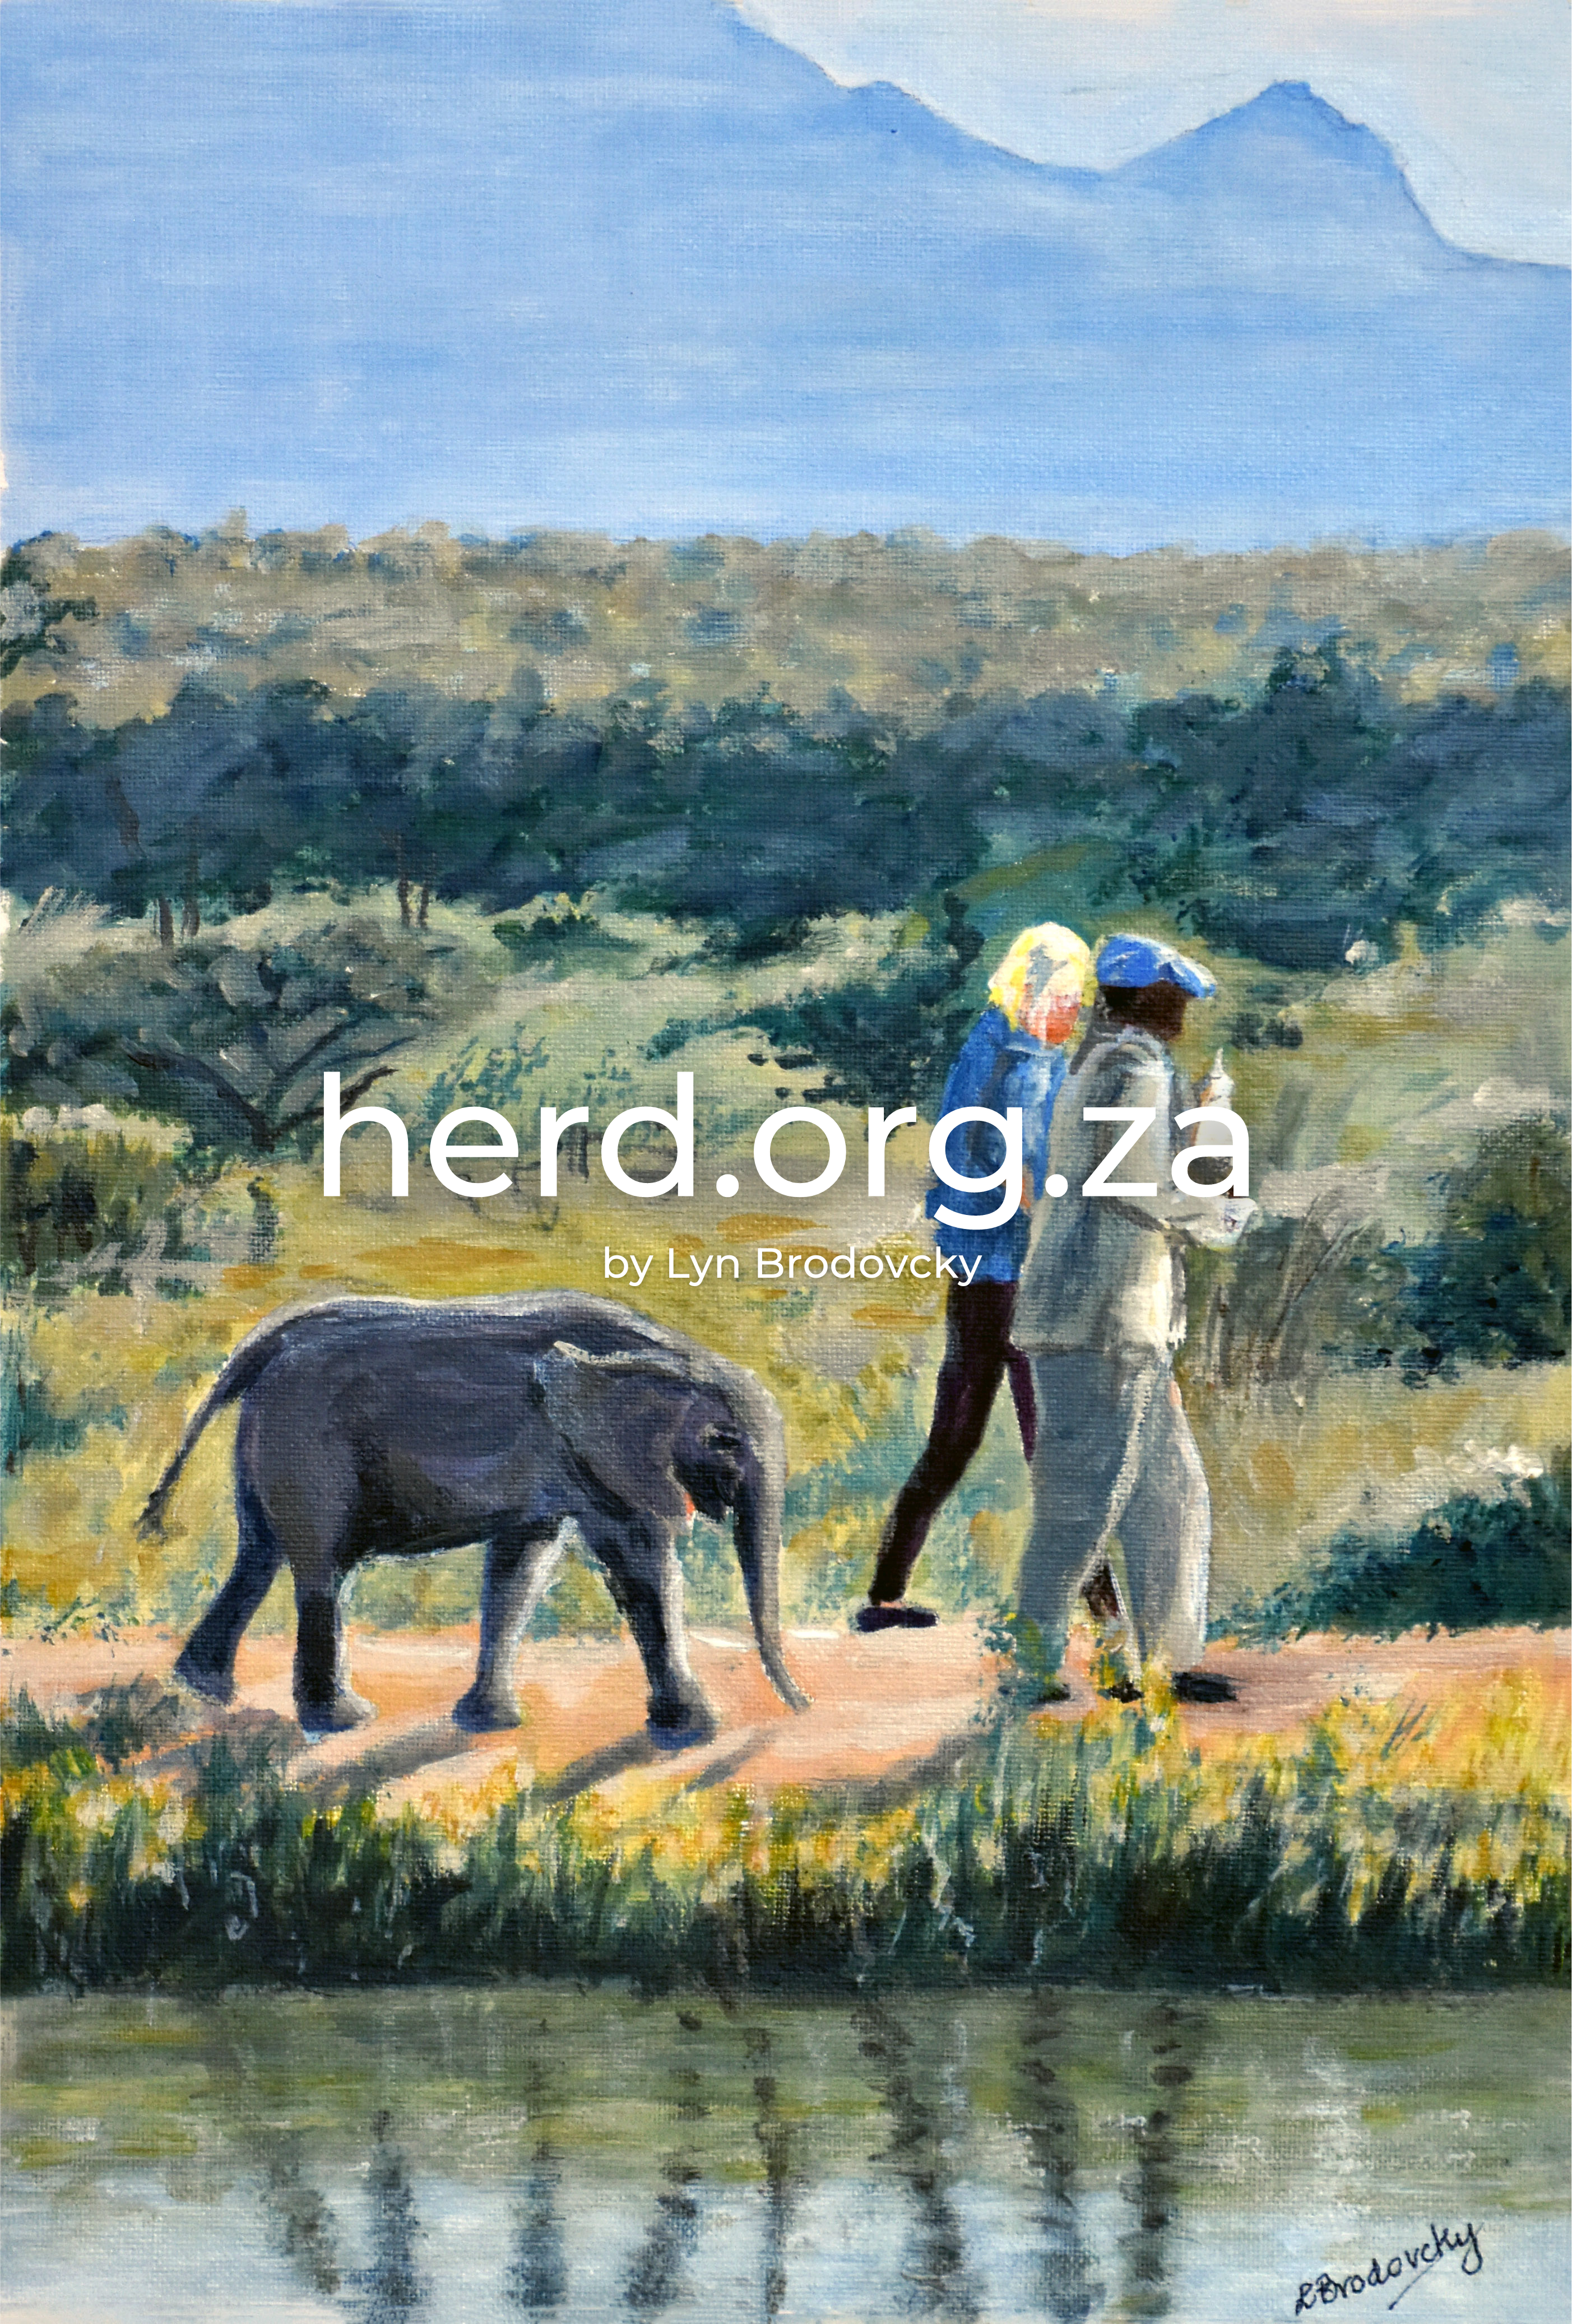 herd.org.za (2)